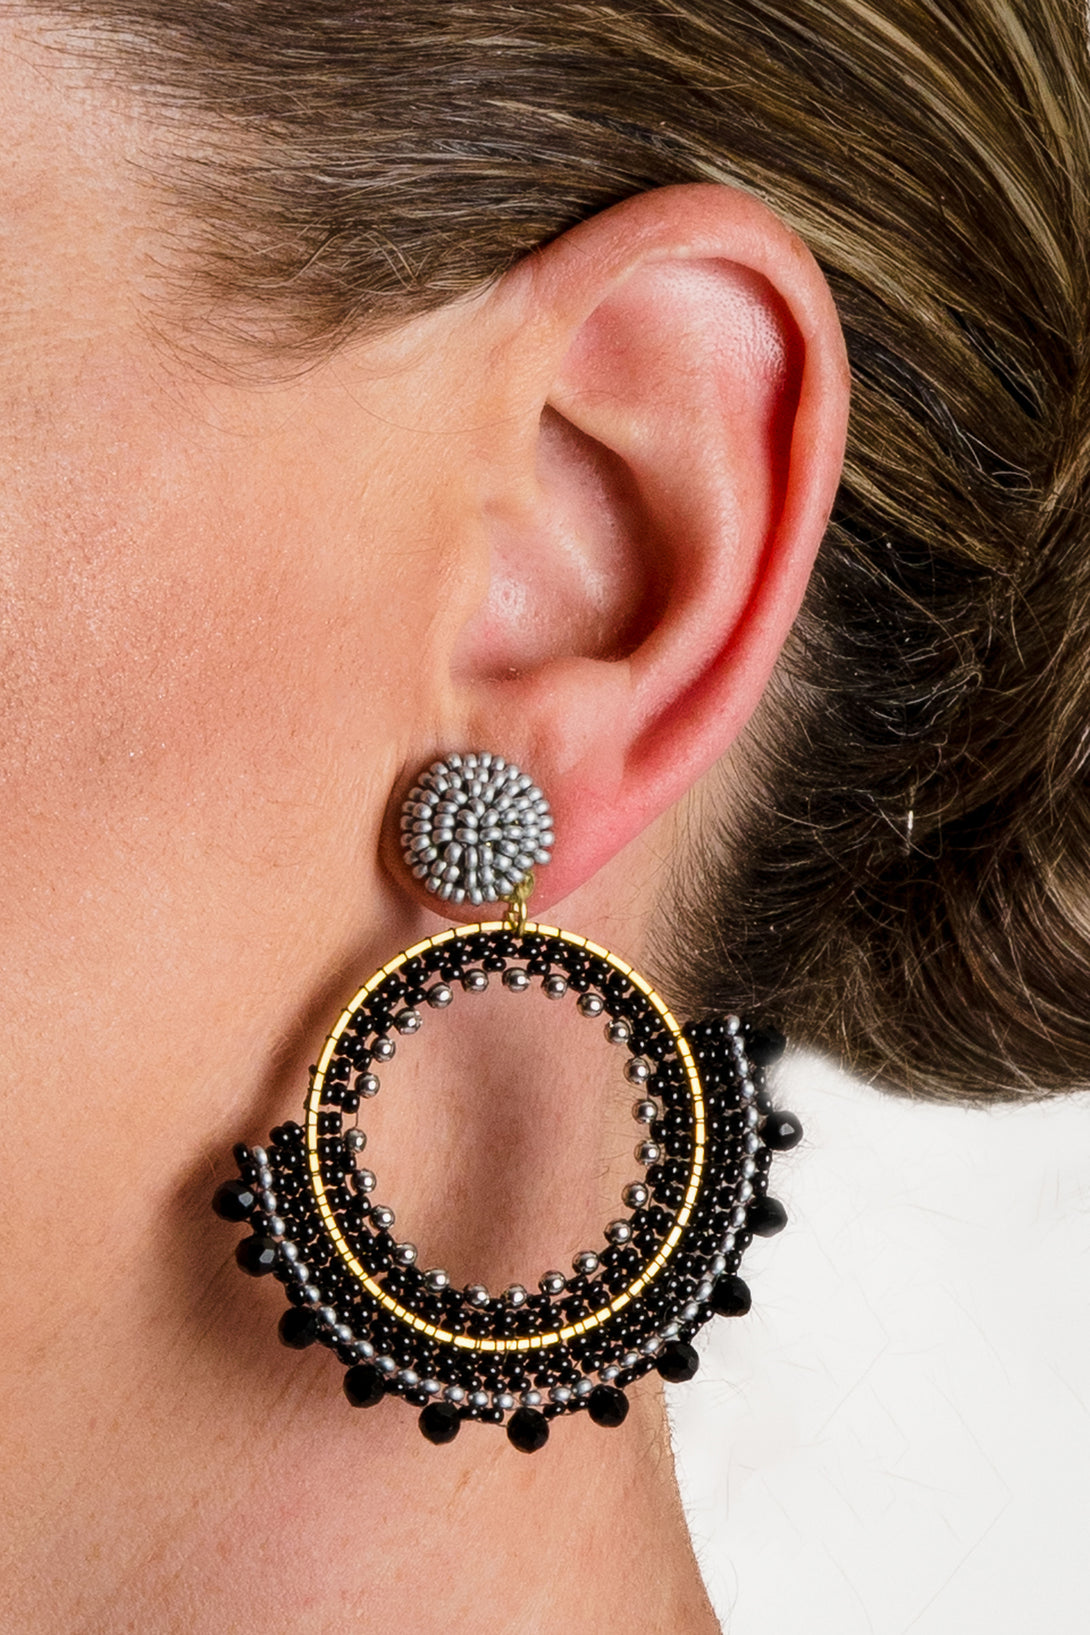 Haisley Earrings - Imagine Fashion